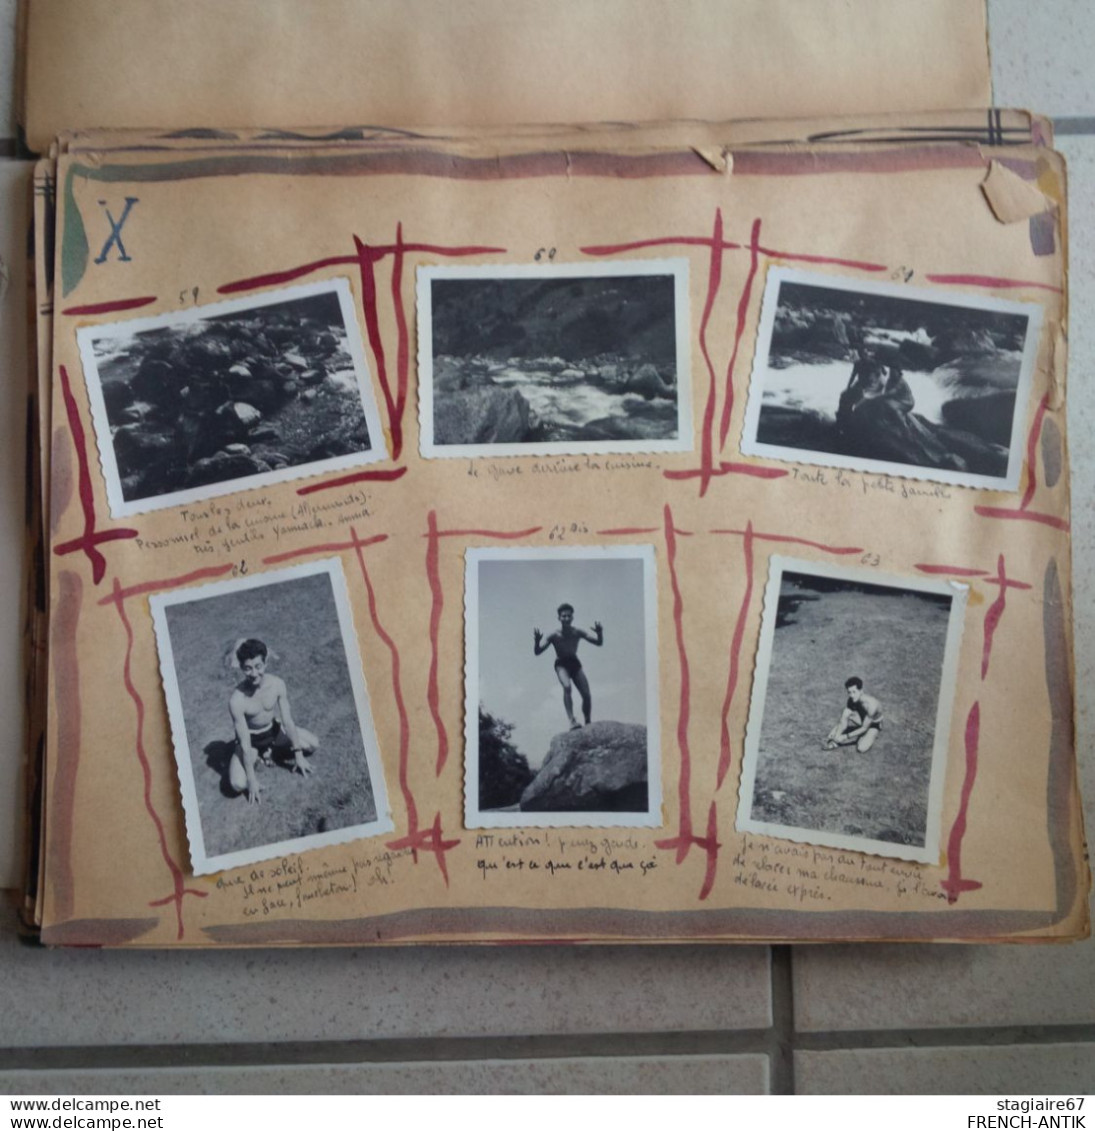 ALBUM PHOTO LE CAUTERETS 1949 SCOUTISME DEGUISEMENT CAMPING ENVIRON 170